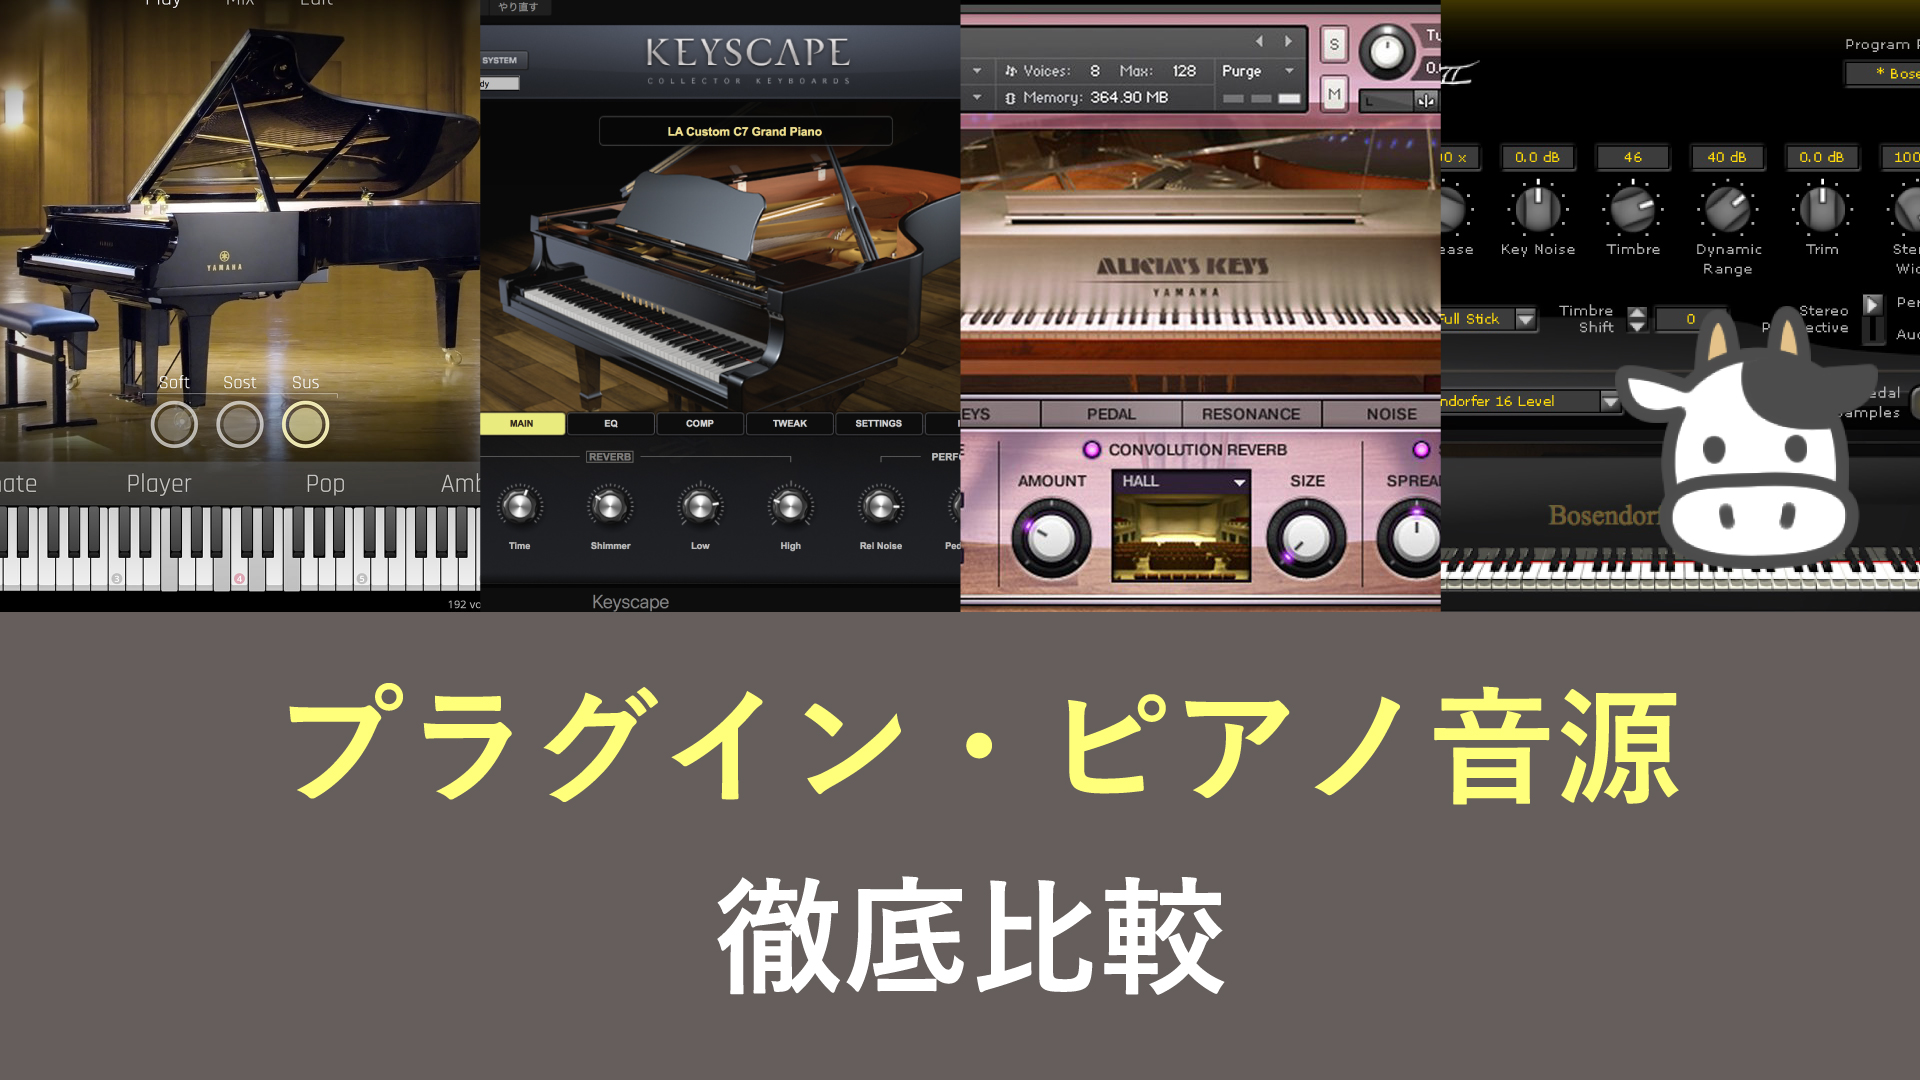 Cfx Ivory Ii Keyscape Qlp 4つのピアノ音源 他も を徹底比較 岩崎将史のブログ